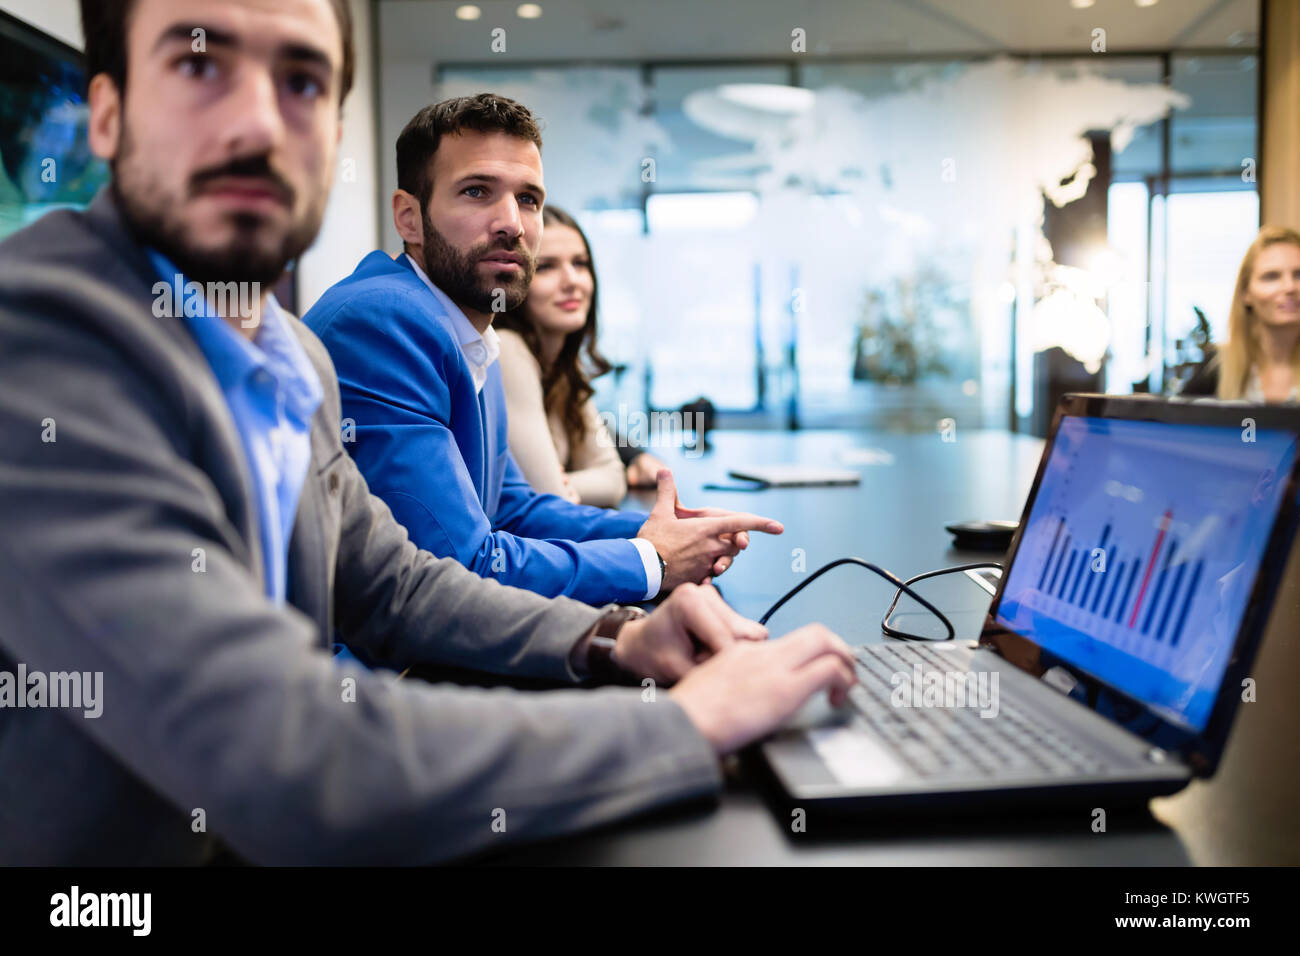 Bild von Geschäftsleuten in Sitzung im Konferenzraum Stockfoto